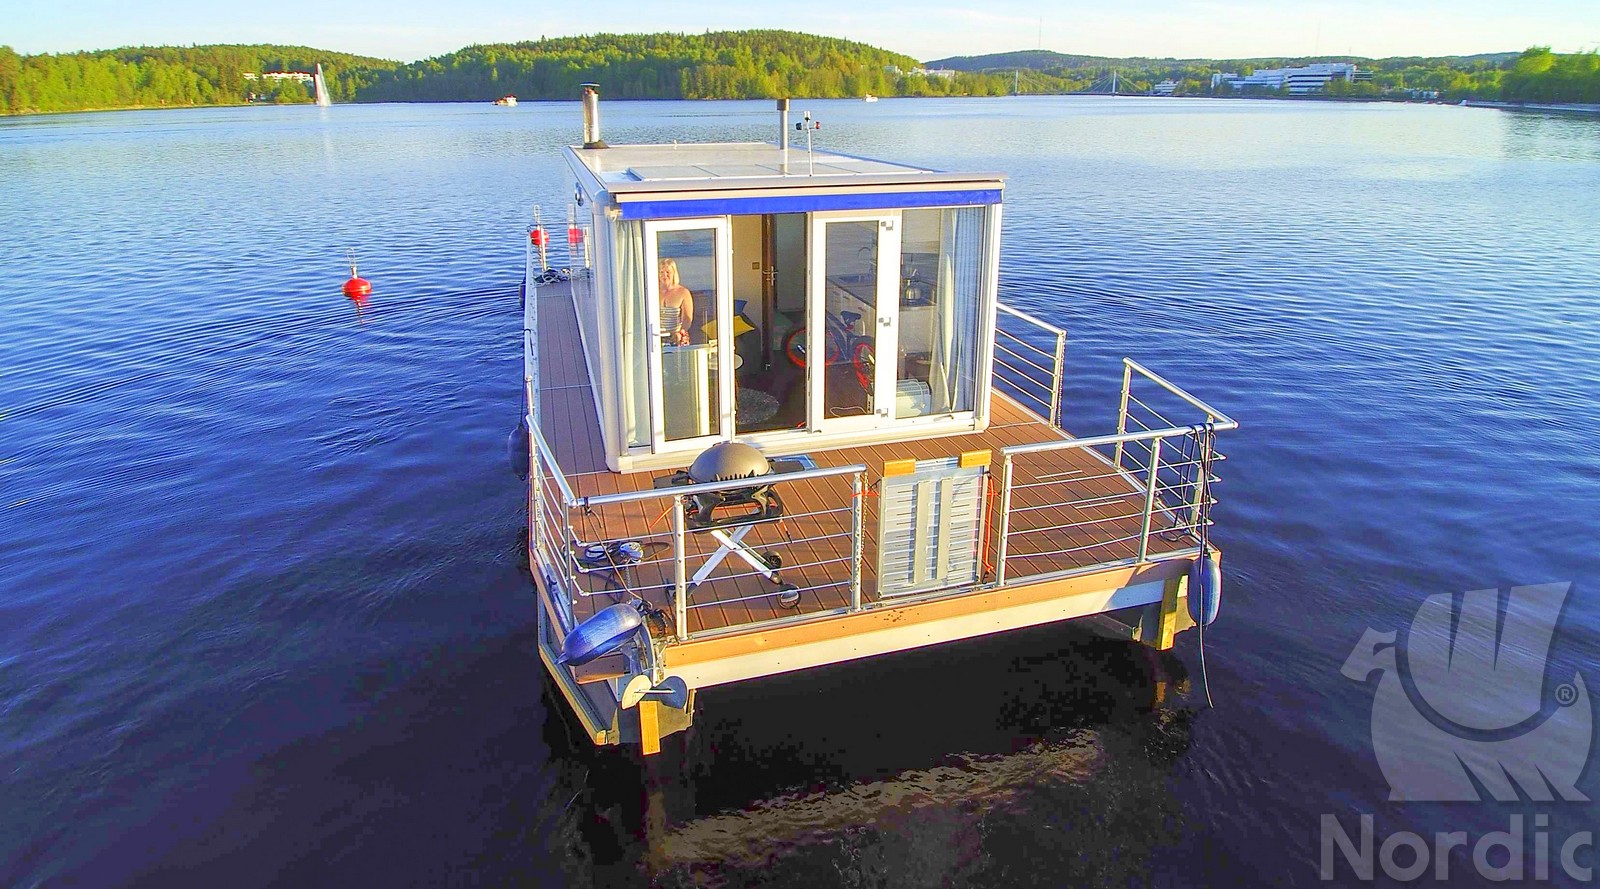 Houseboat NordicSeason – Nordic 40 Evo24 – Nordic Season Houseboat